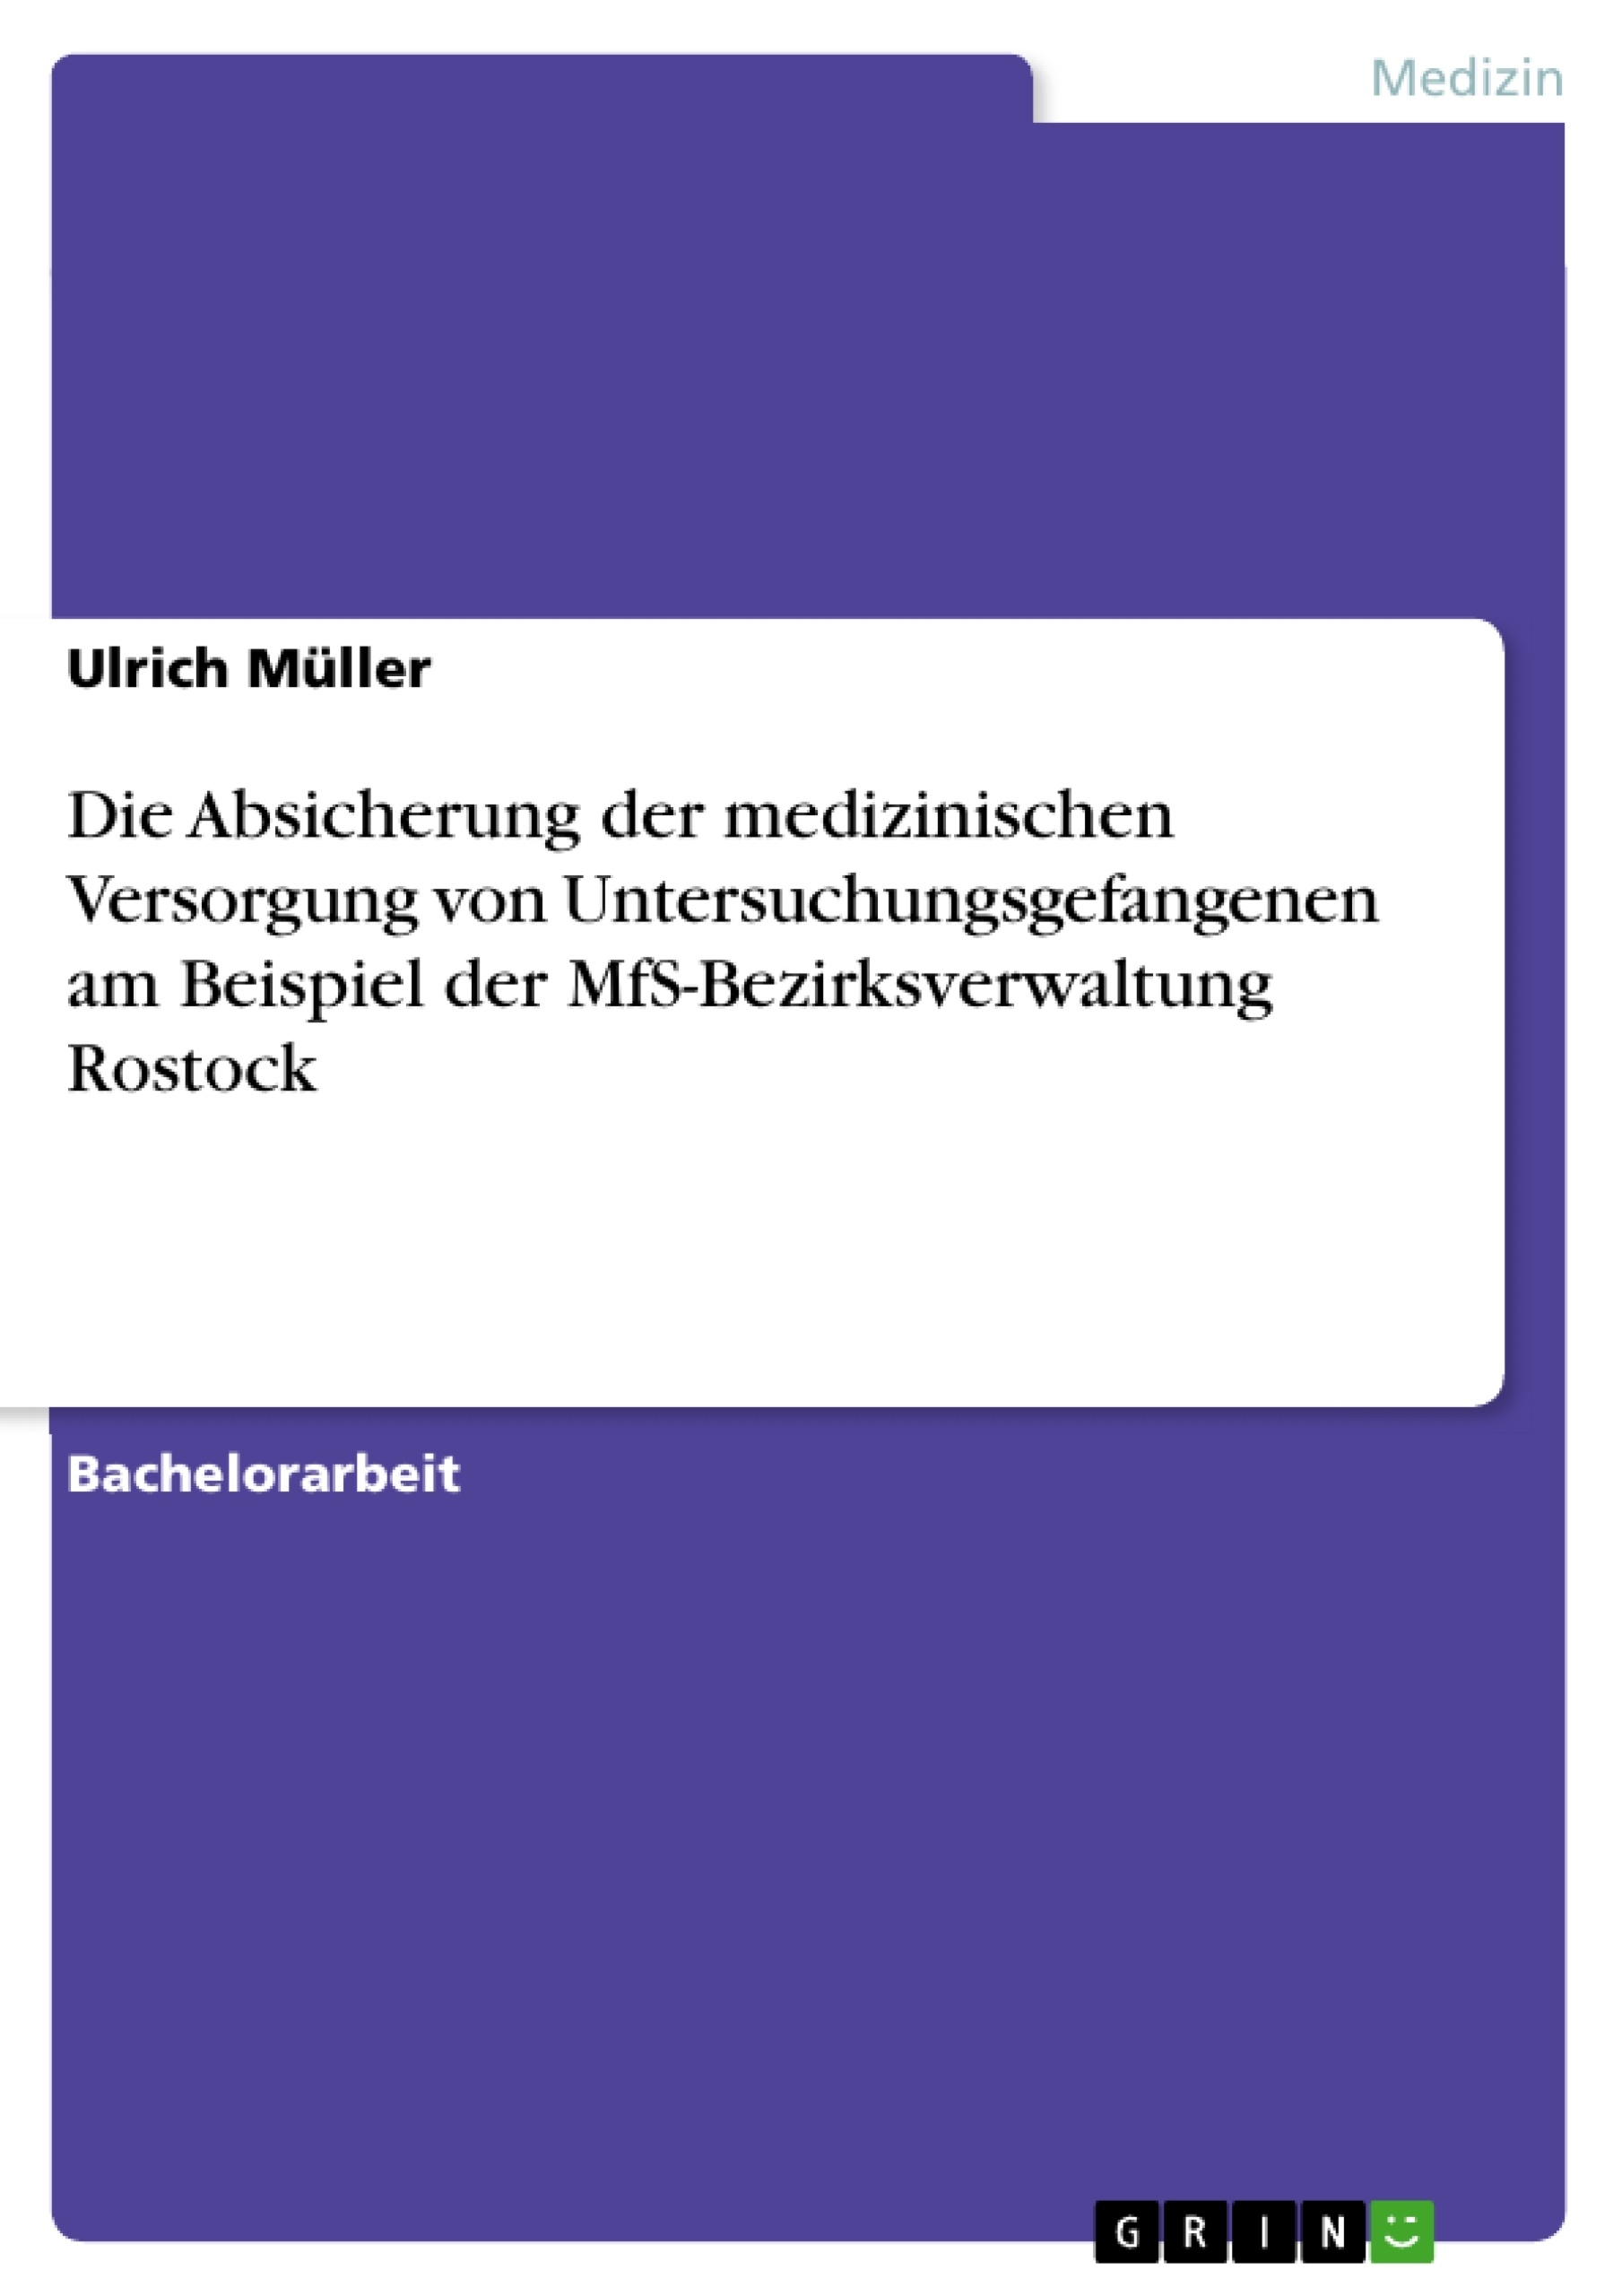 Titel: Die Absicherung der medizinischen Versorgung von Untersuchungsgefangenen am Beispiel der MfS-Bezirksverwaltung Rostock